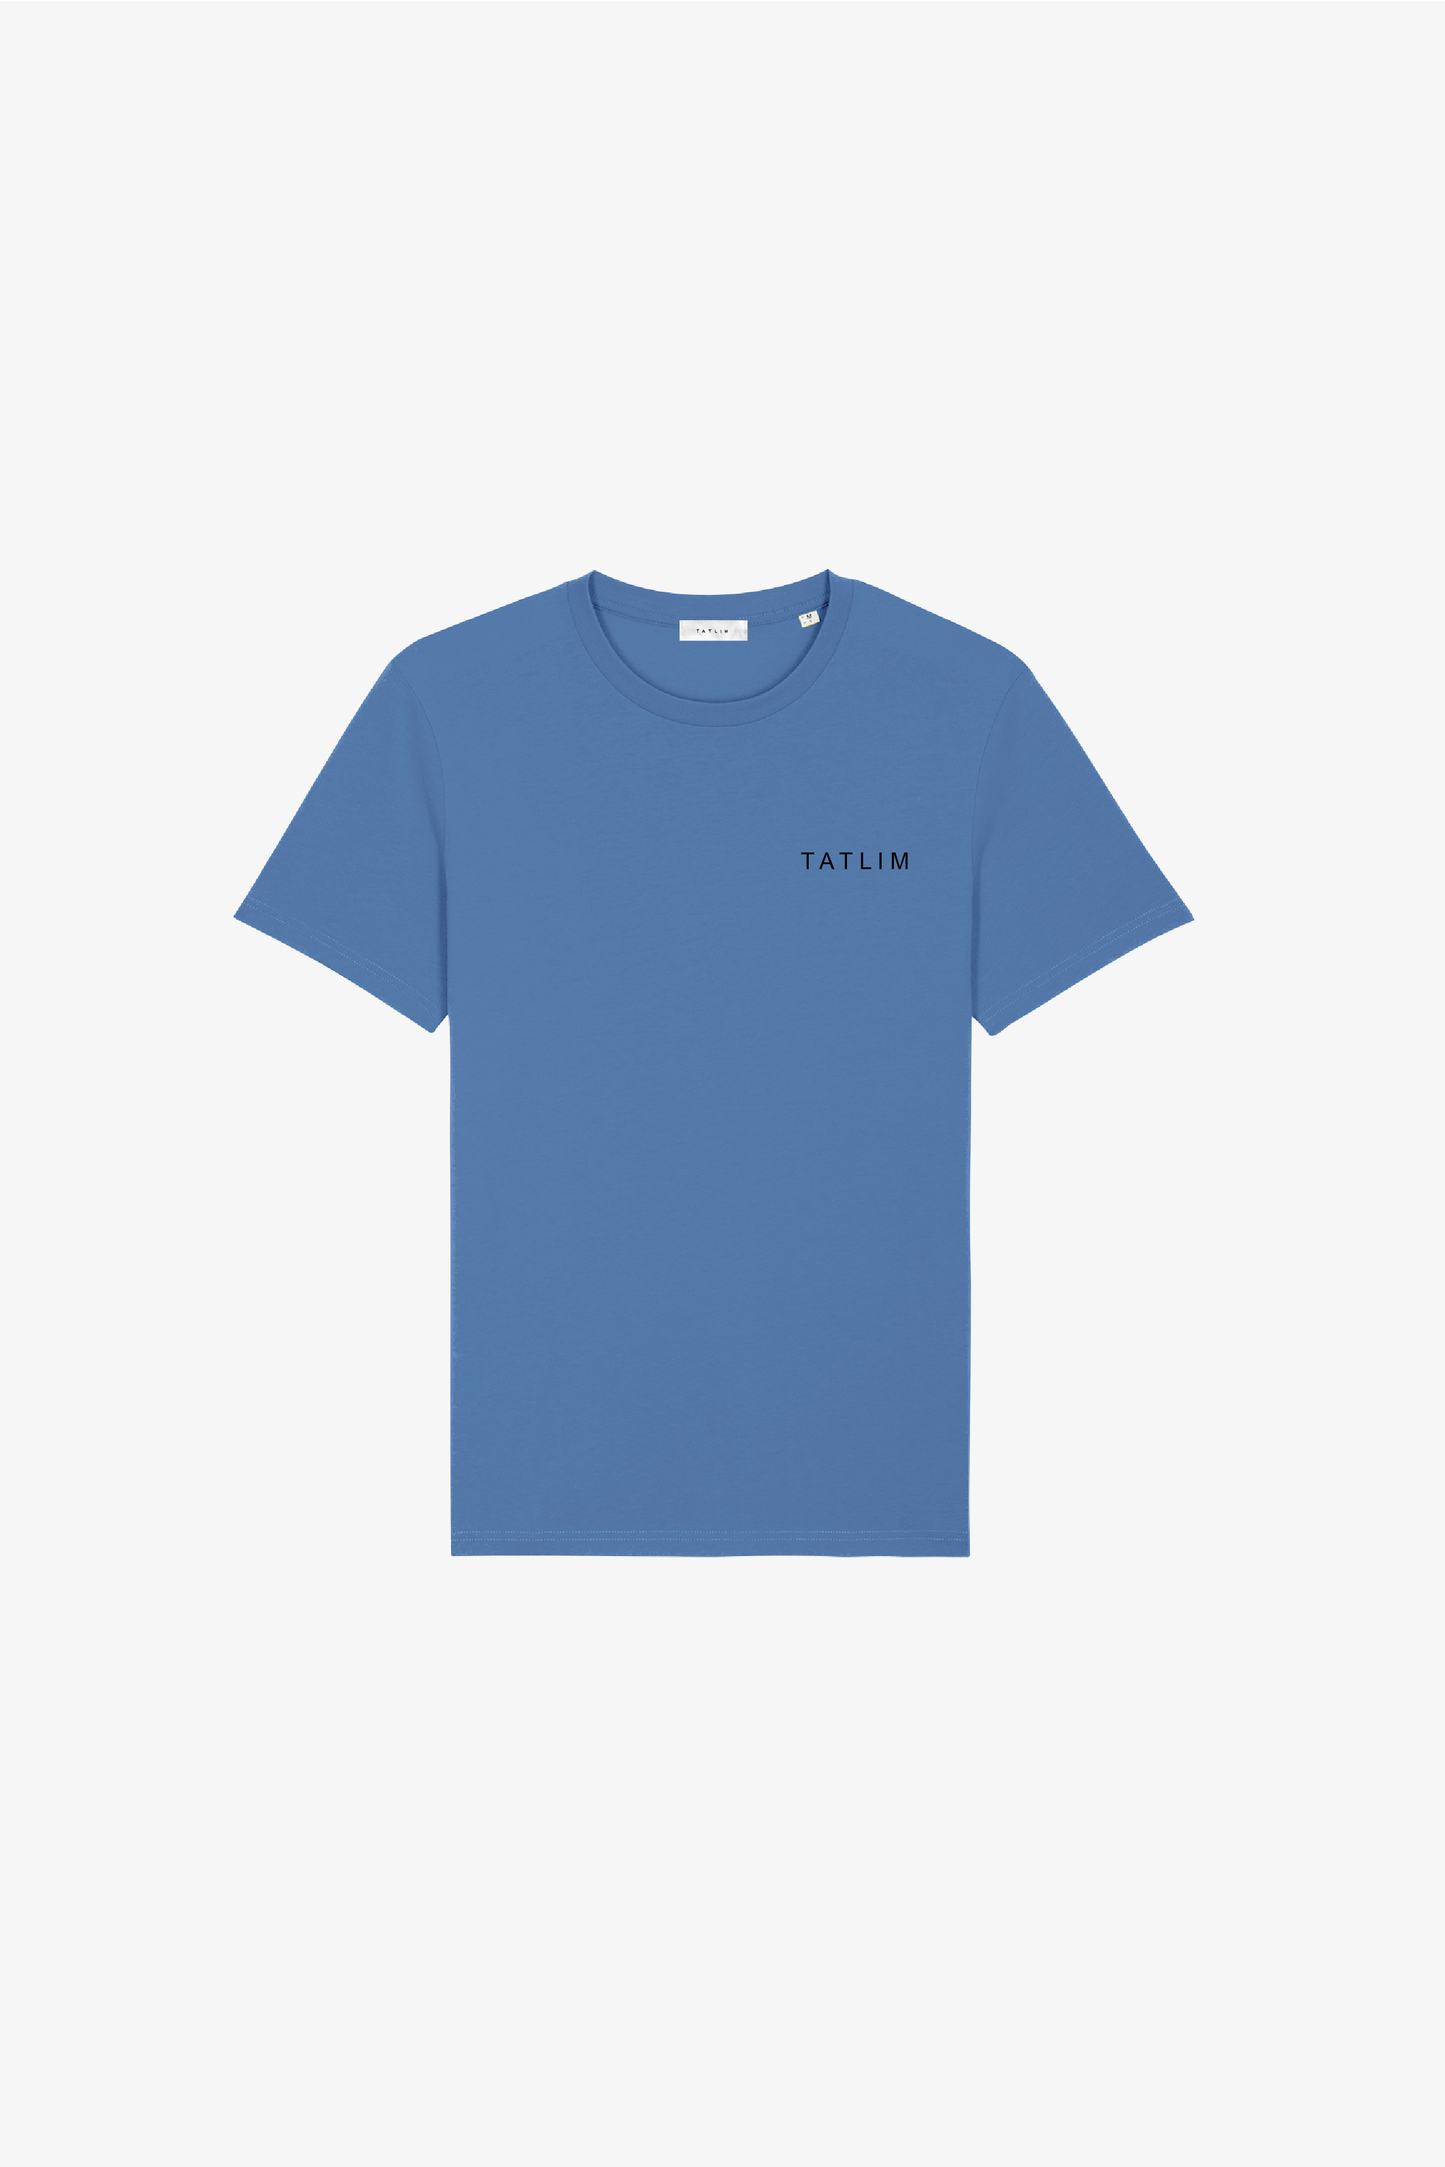 Denim Blue Tatlim Essentials II T Shirt